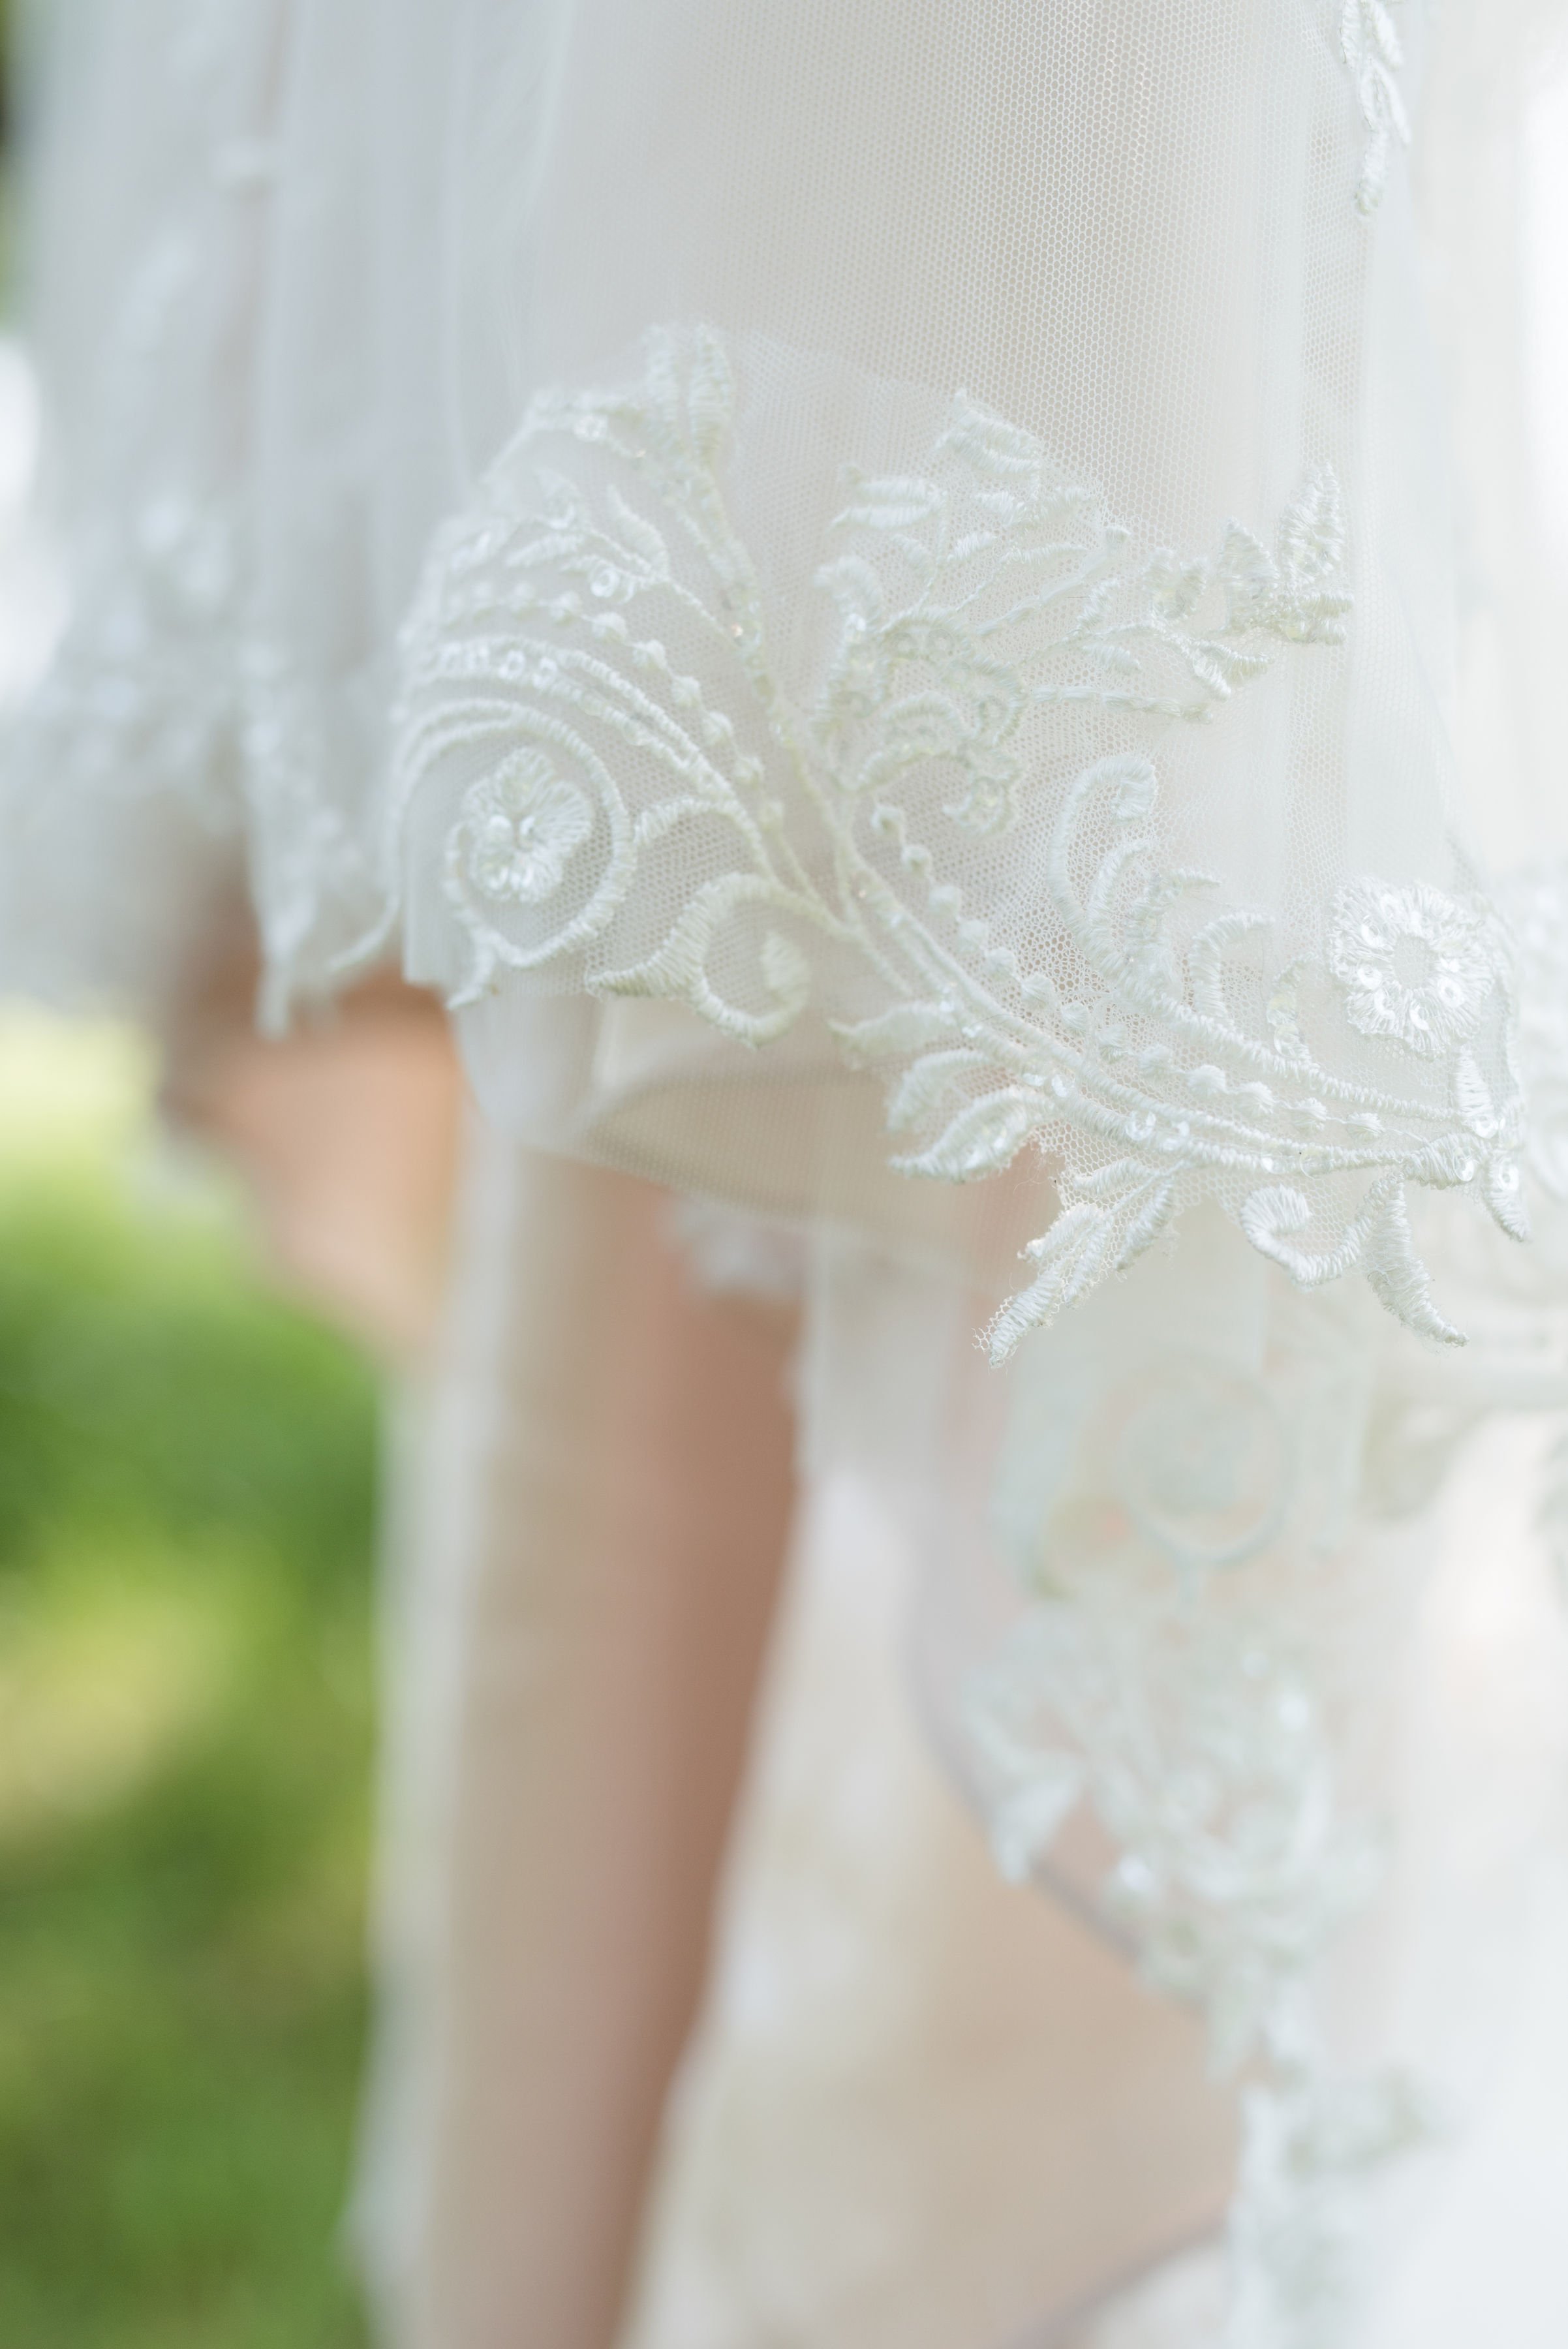 Erickson Farmstead Summer Wedding Gown Details.jpeg